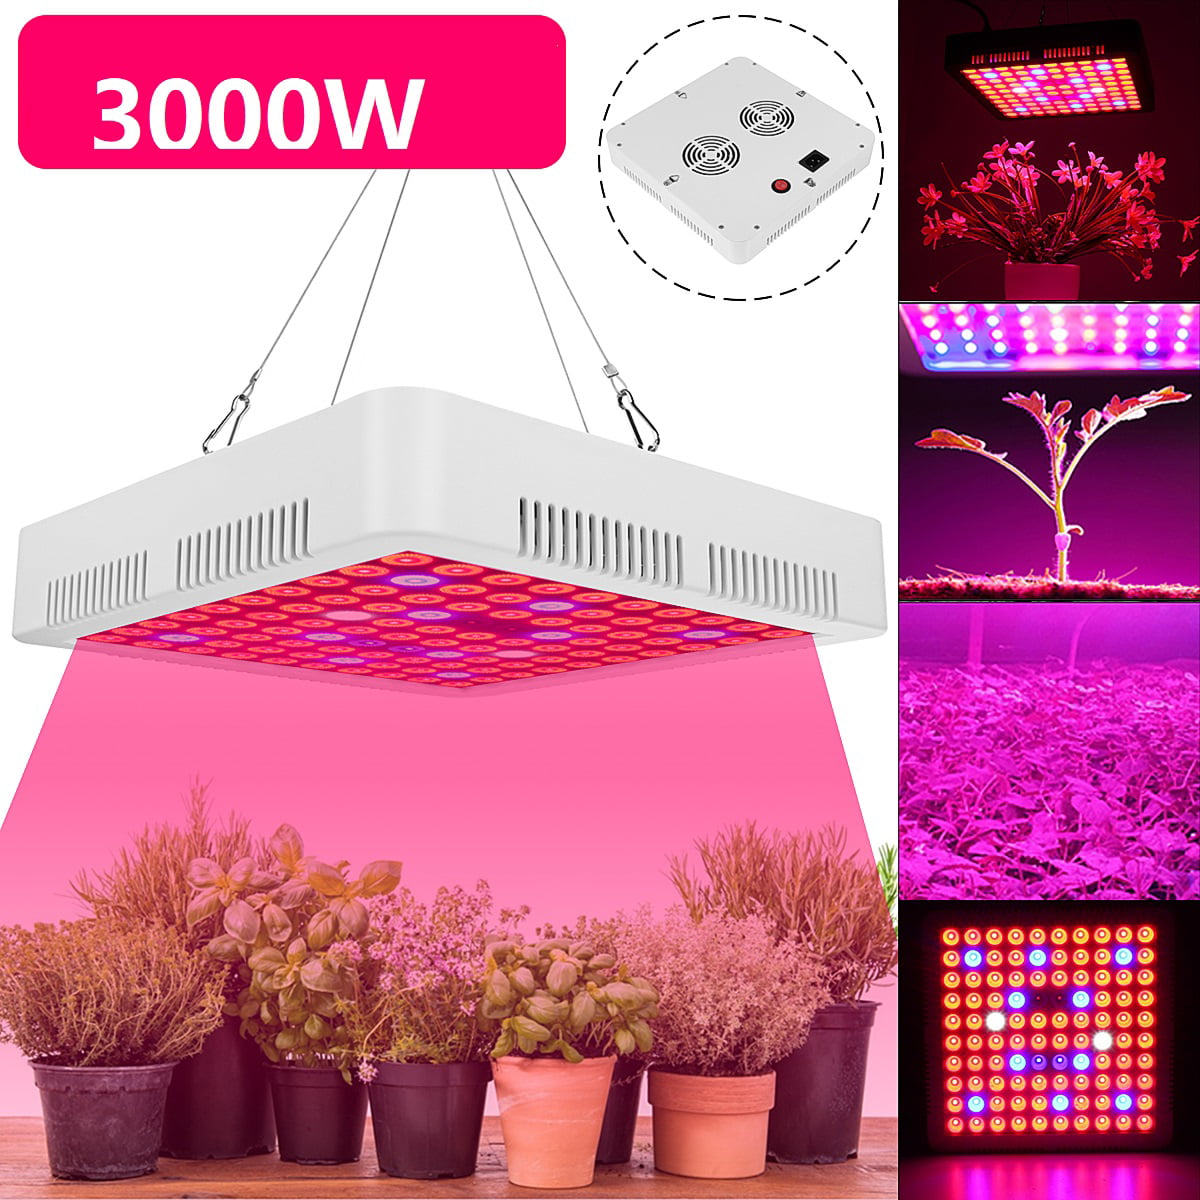 1500Watt LED grow light Full Spectrum for Indoor Medical Plants flower Veg Bloom 